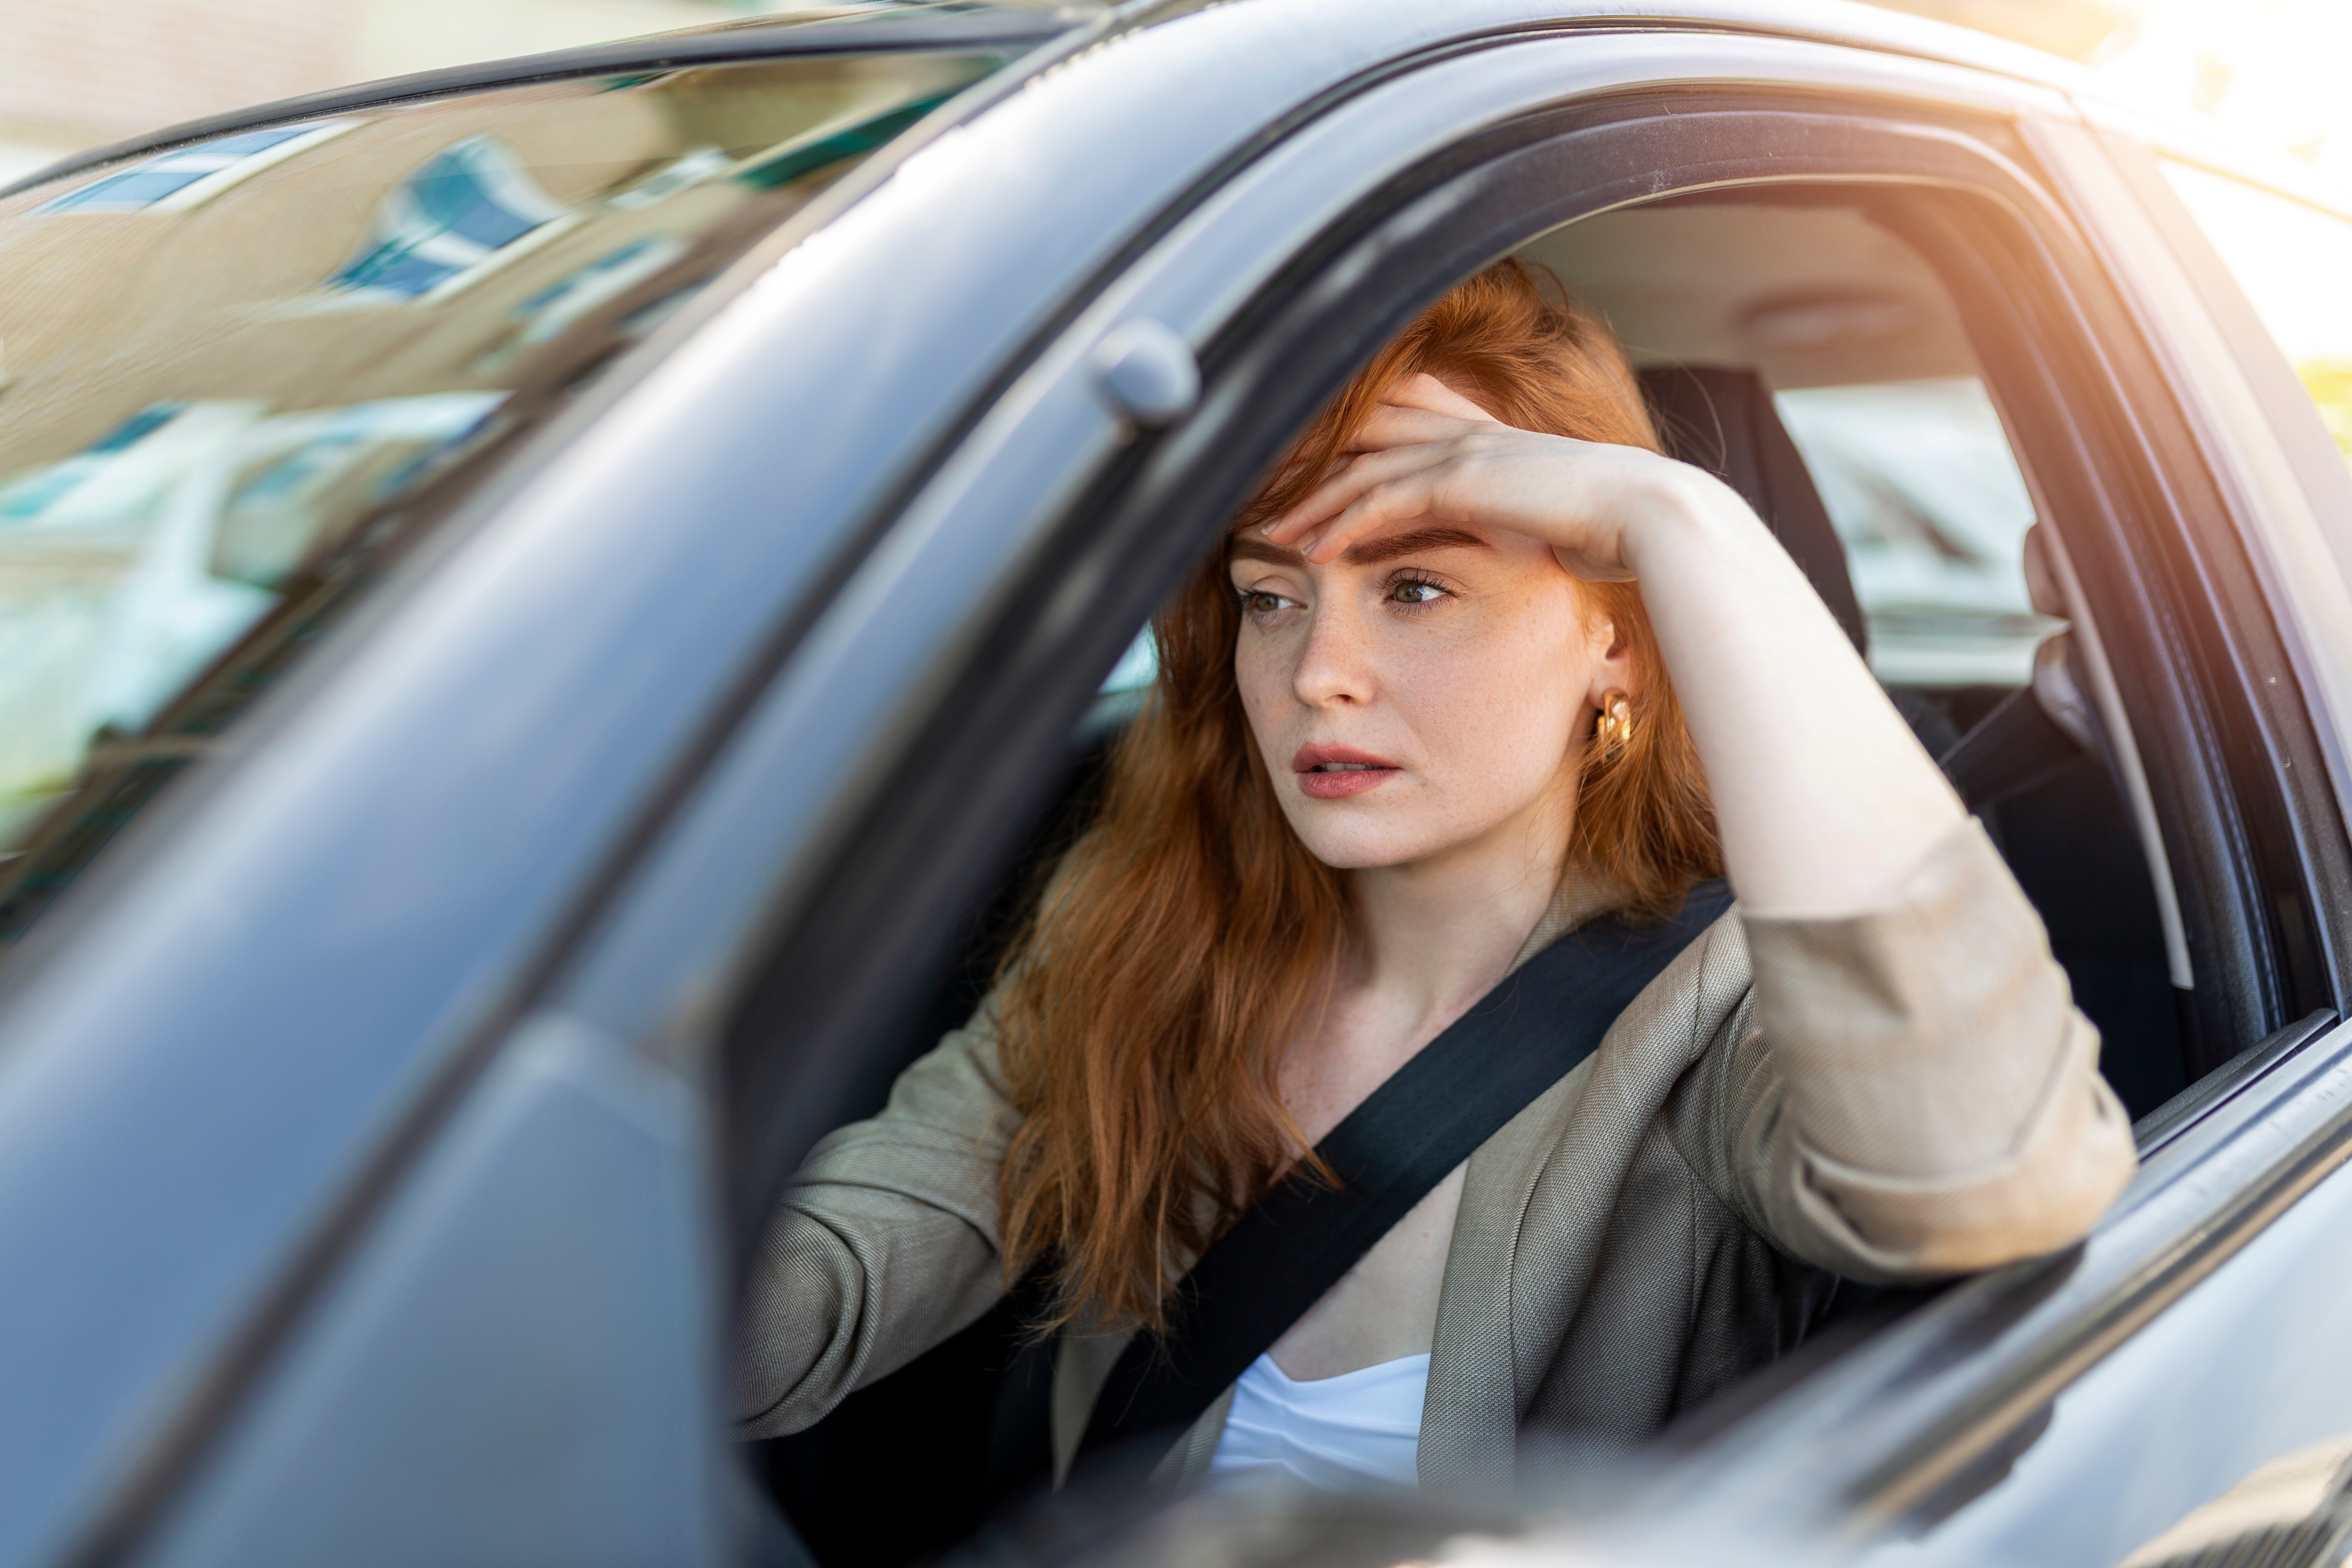 Eine Frau, die aussieht, als sei sie beim Autofahren in Gedanken versunken | Quelle: Shutterstock